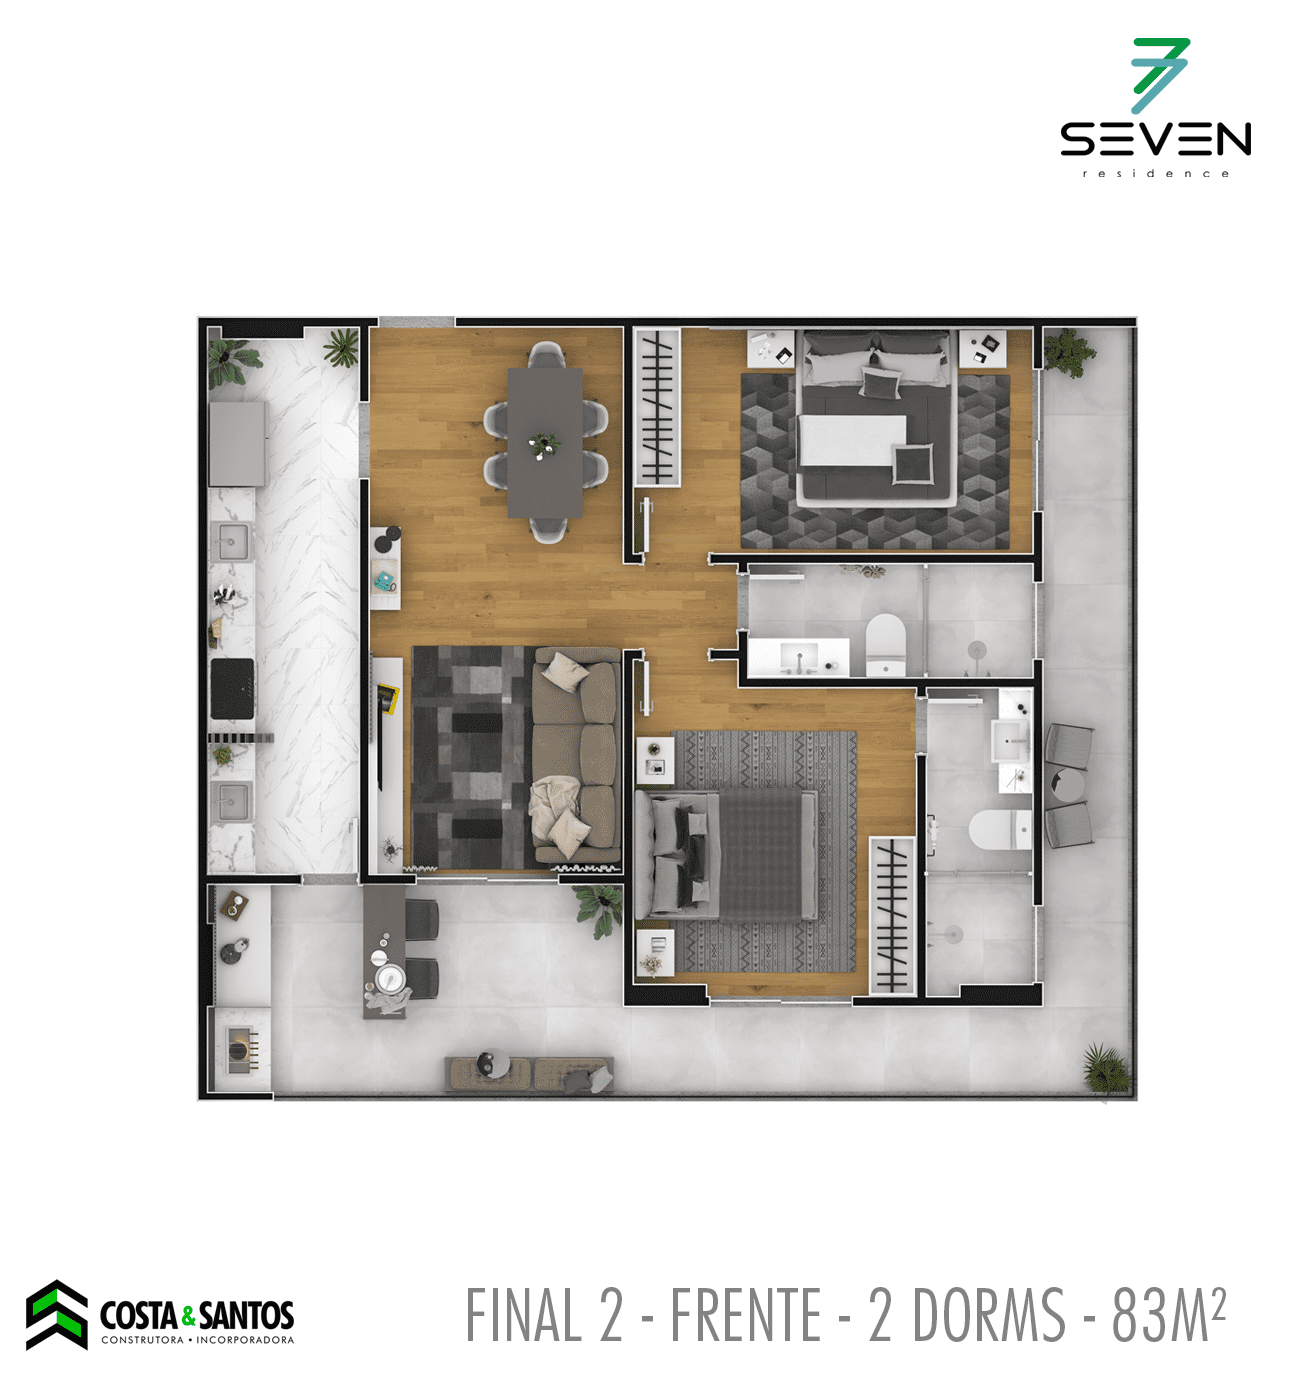 Edifício Seven Residence (Final 2)